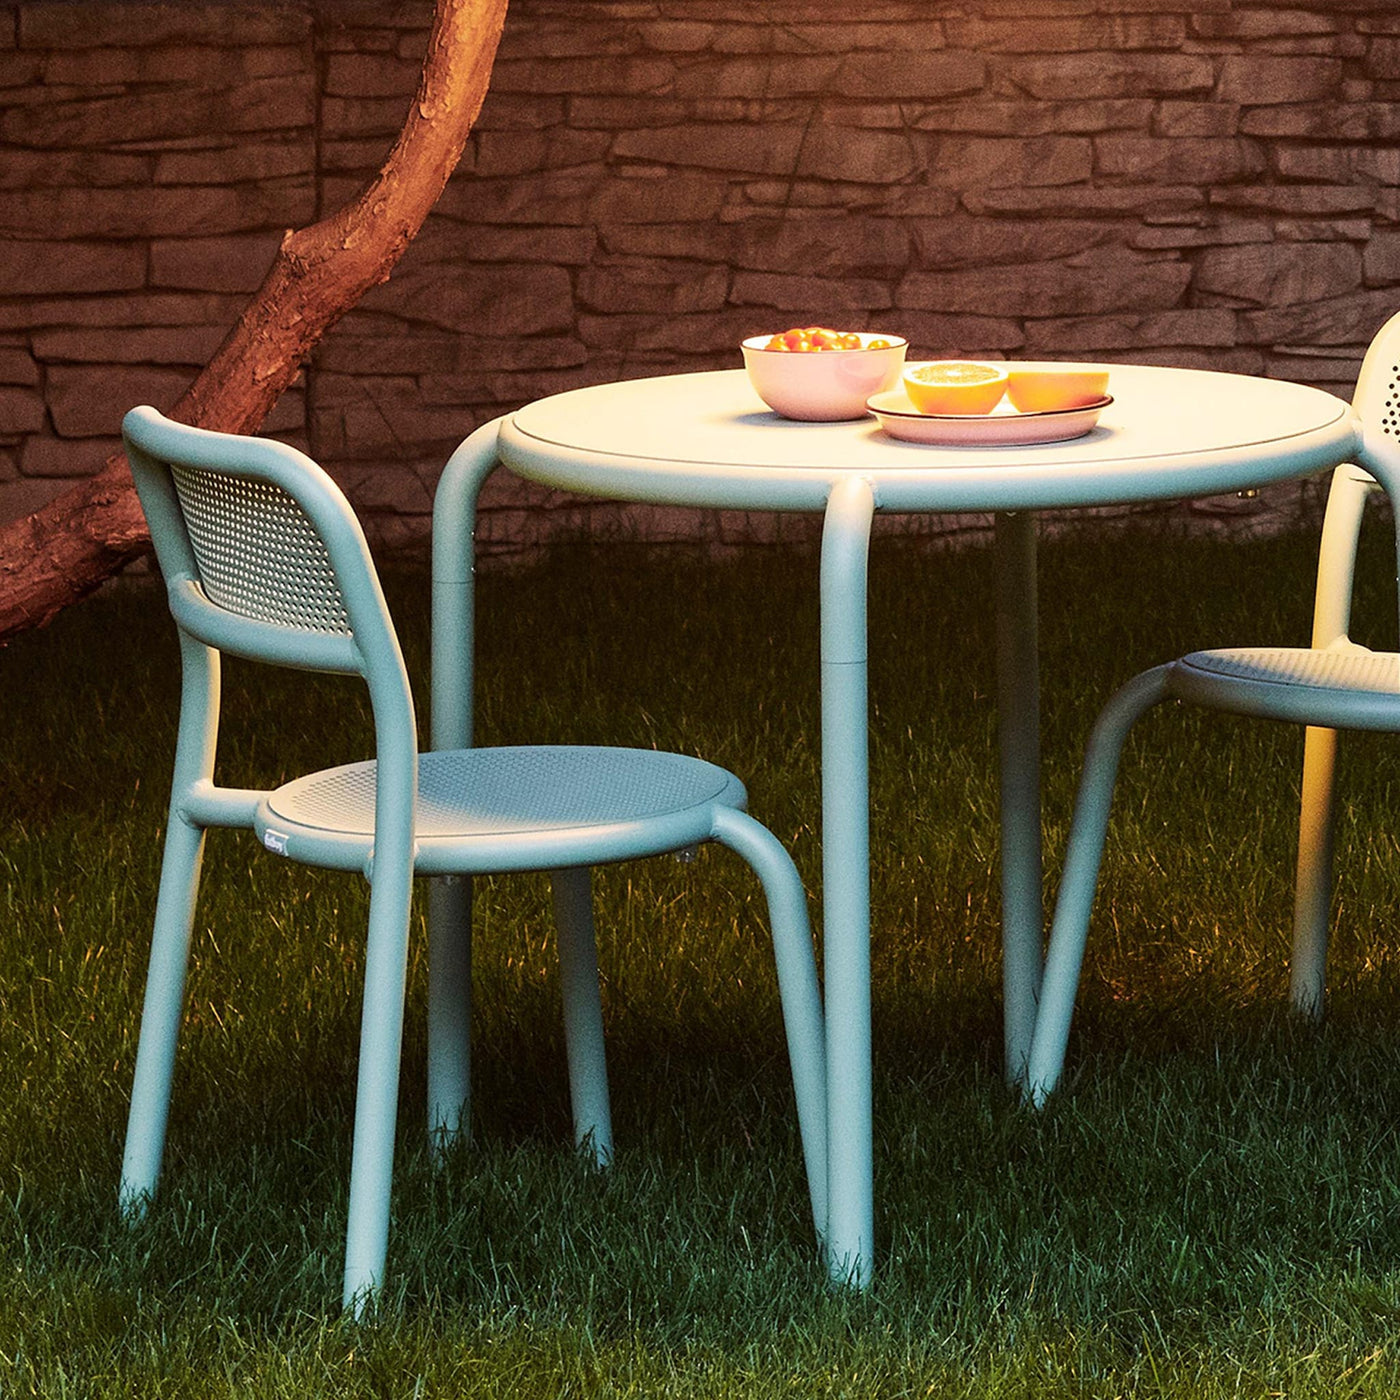 La chaise Toní de Fatboy combine style et praticité, parfaite pour les espaces extérieurs.